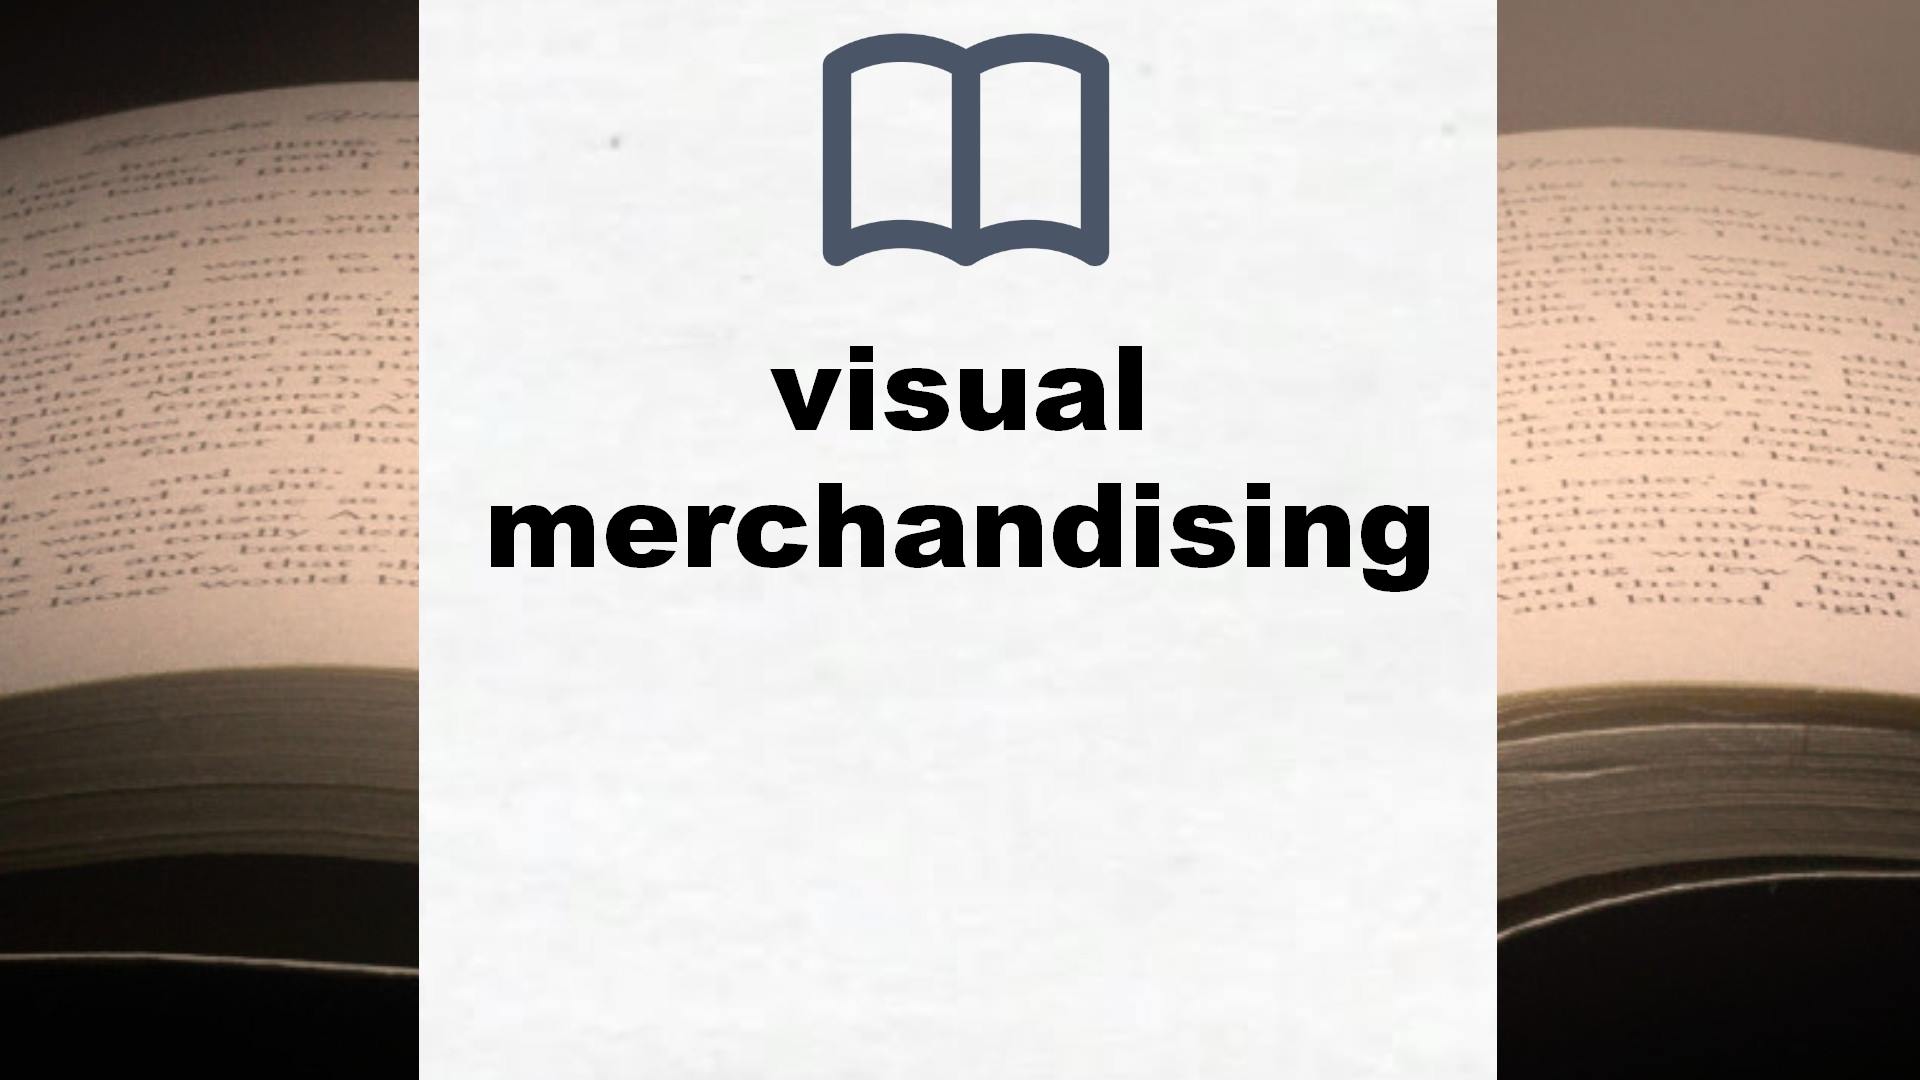 Libros sobre visual merchandising